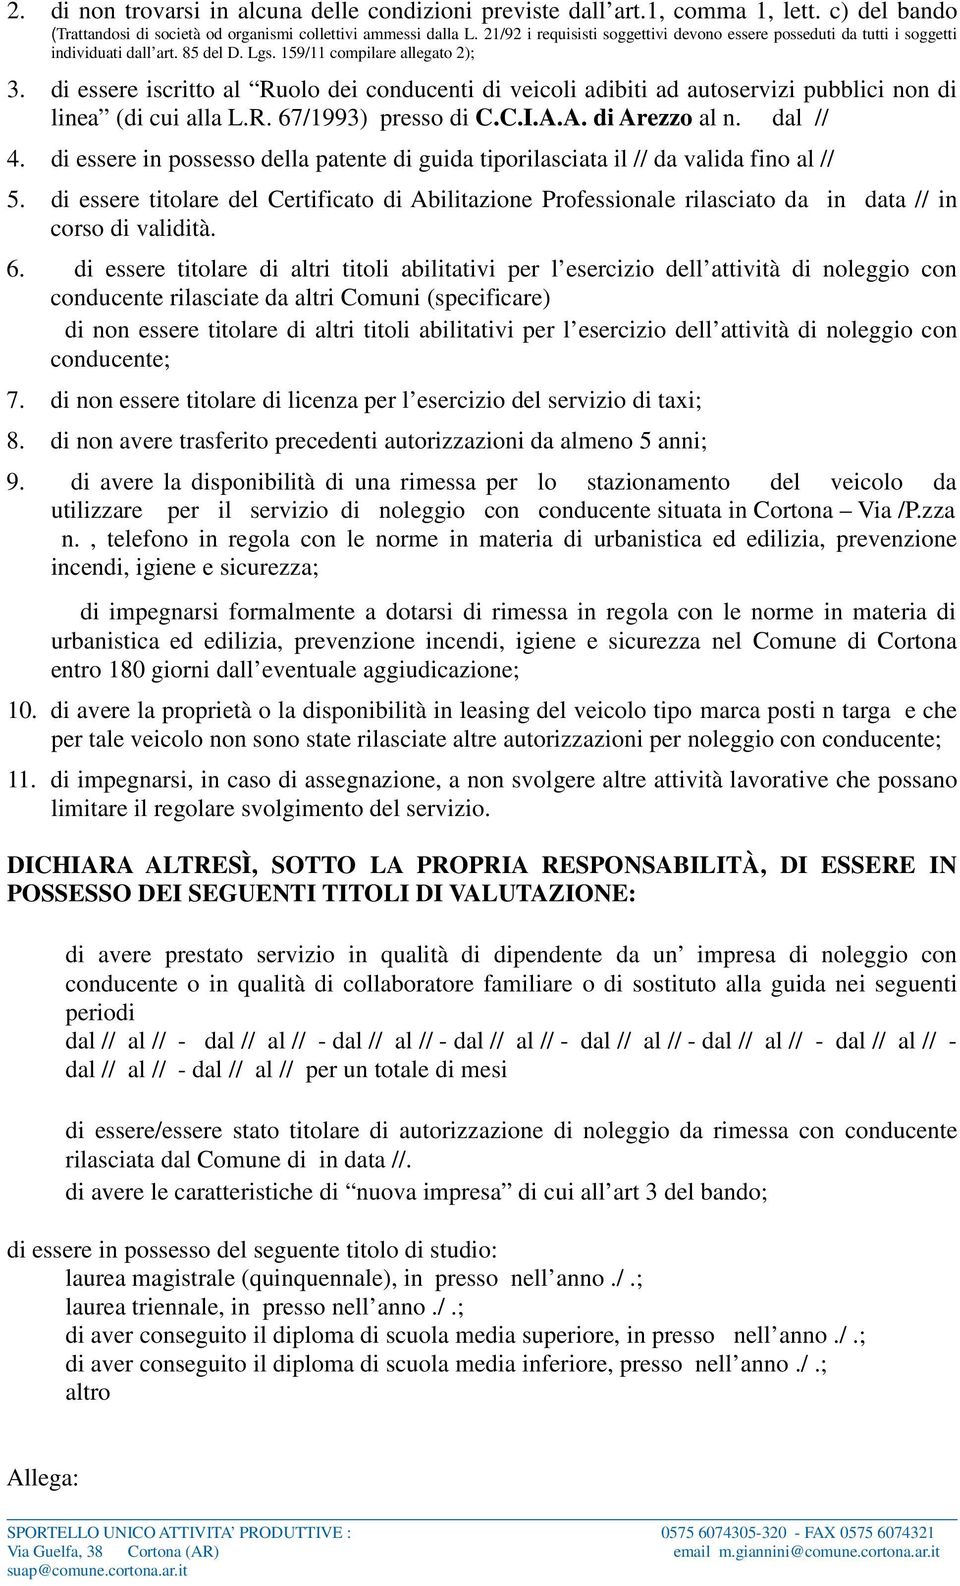 di essere iscritto al Ruolo dei conducenti di veicoli adibiti ad autoservizi pubblici non di linea (di cui alla L.R. 67/1993) presso di C.C.I.A.A. di Arezzo al n. dal // 4.